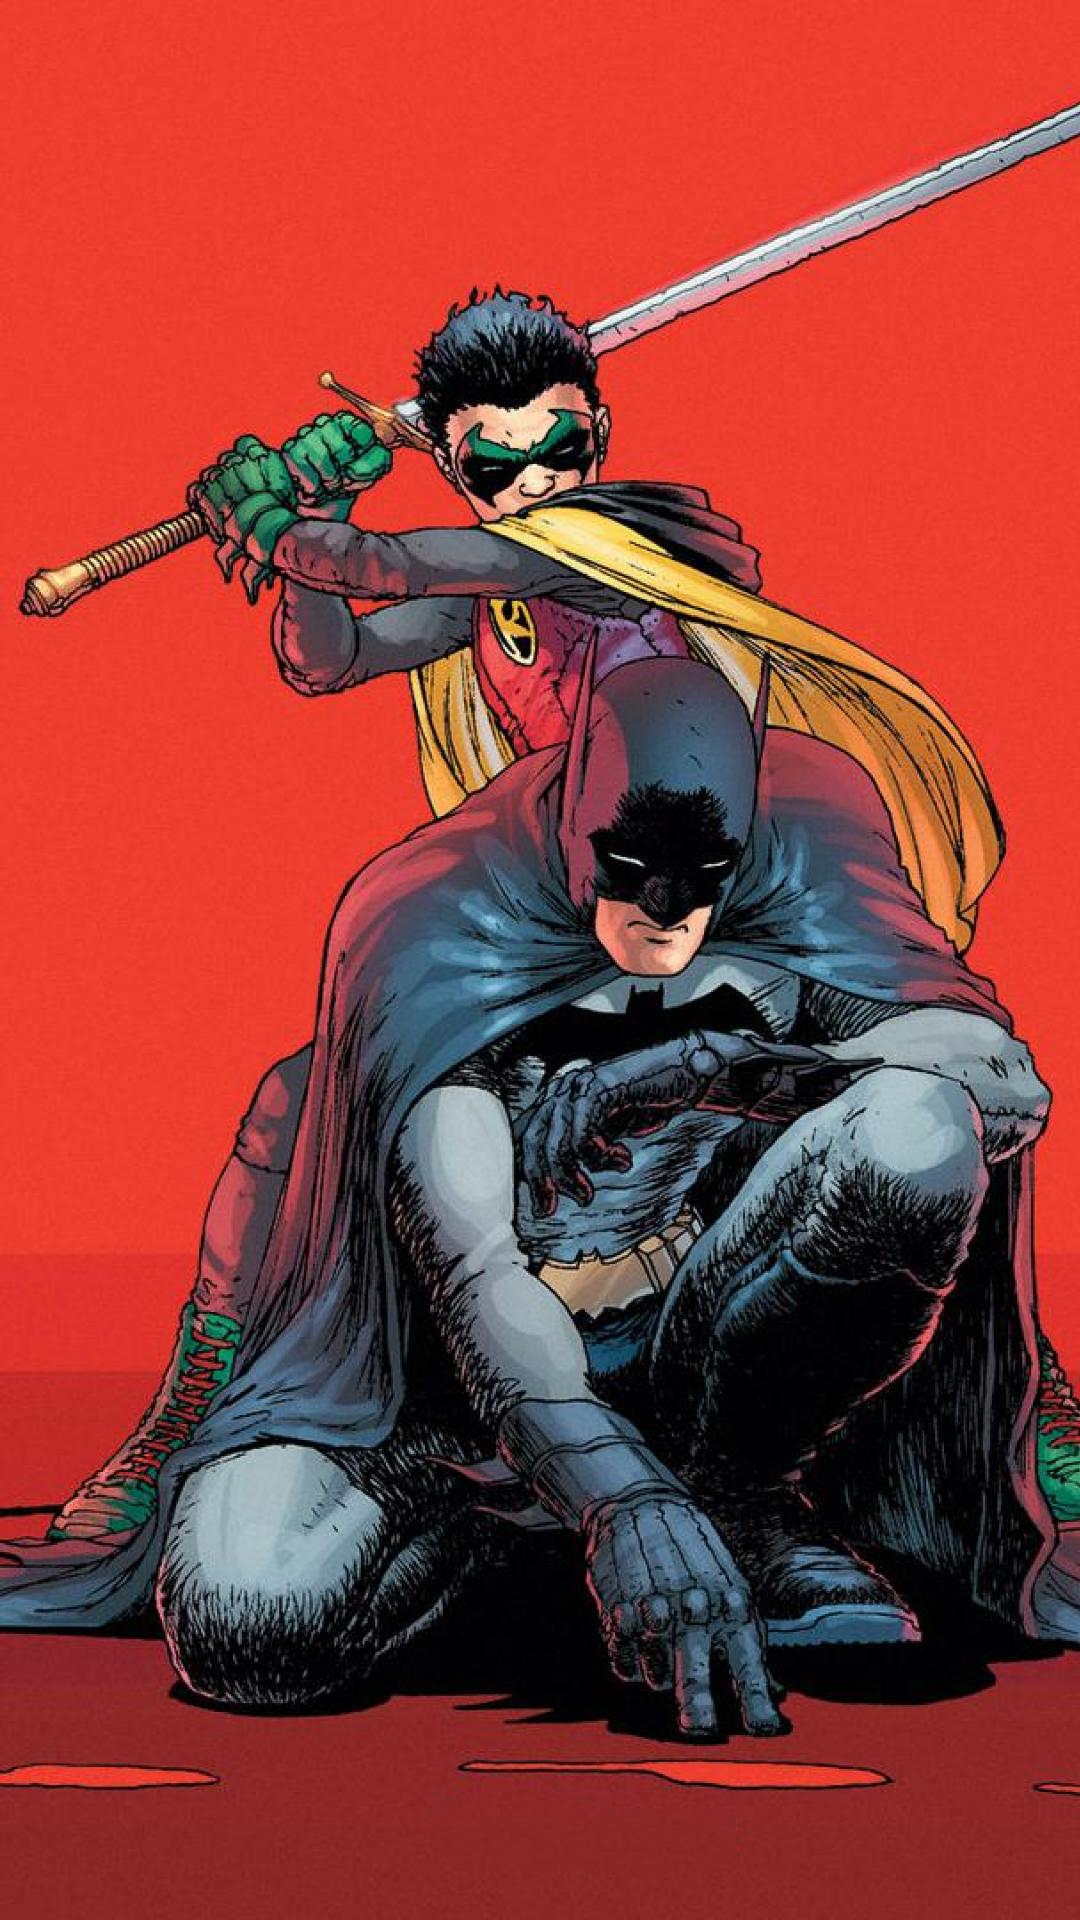 dc comics wallpaper,fictional character,superhero,batman,justice league,comics